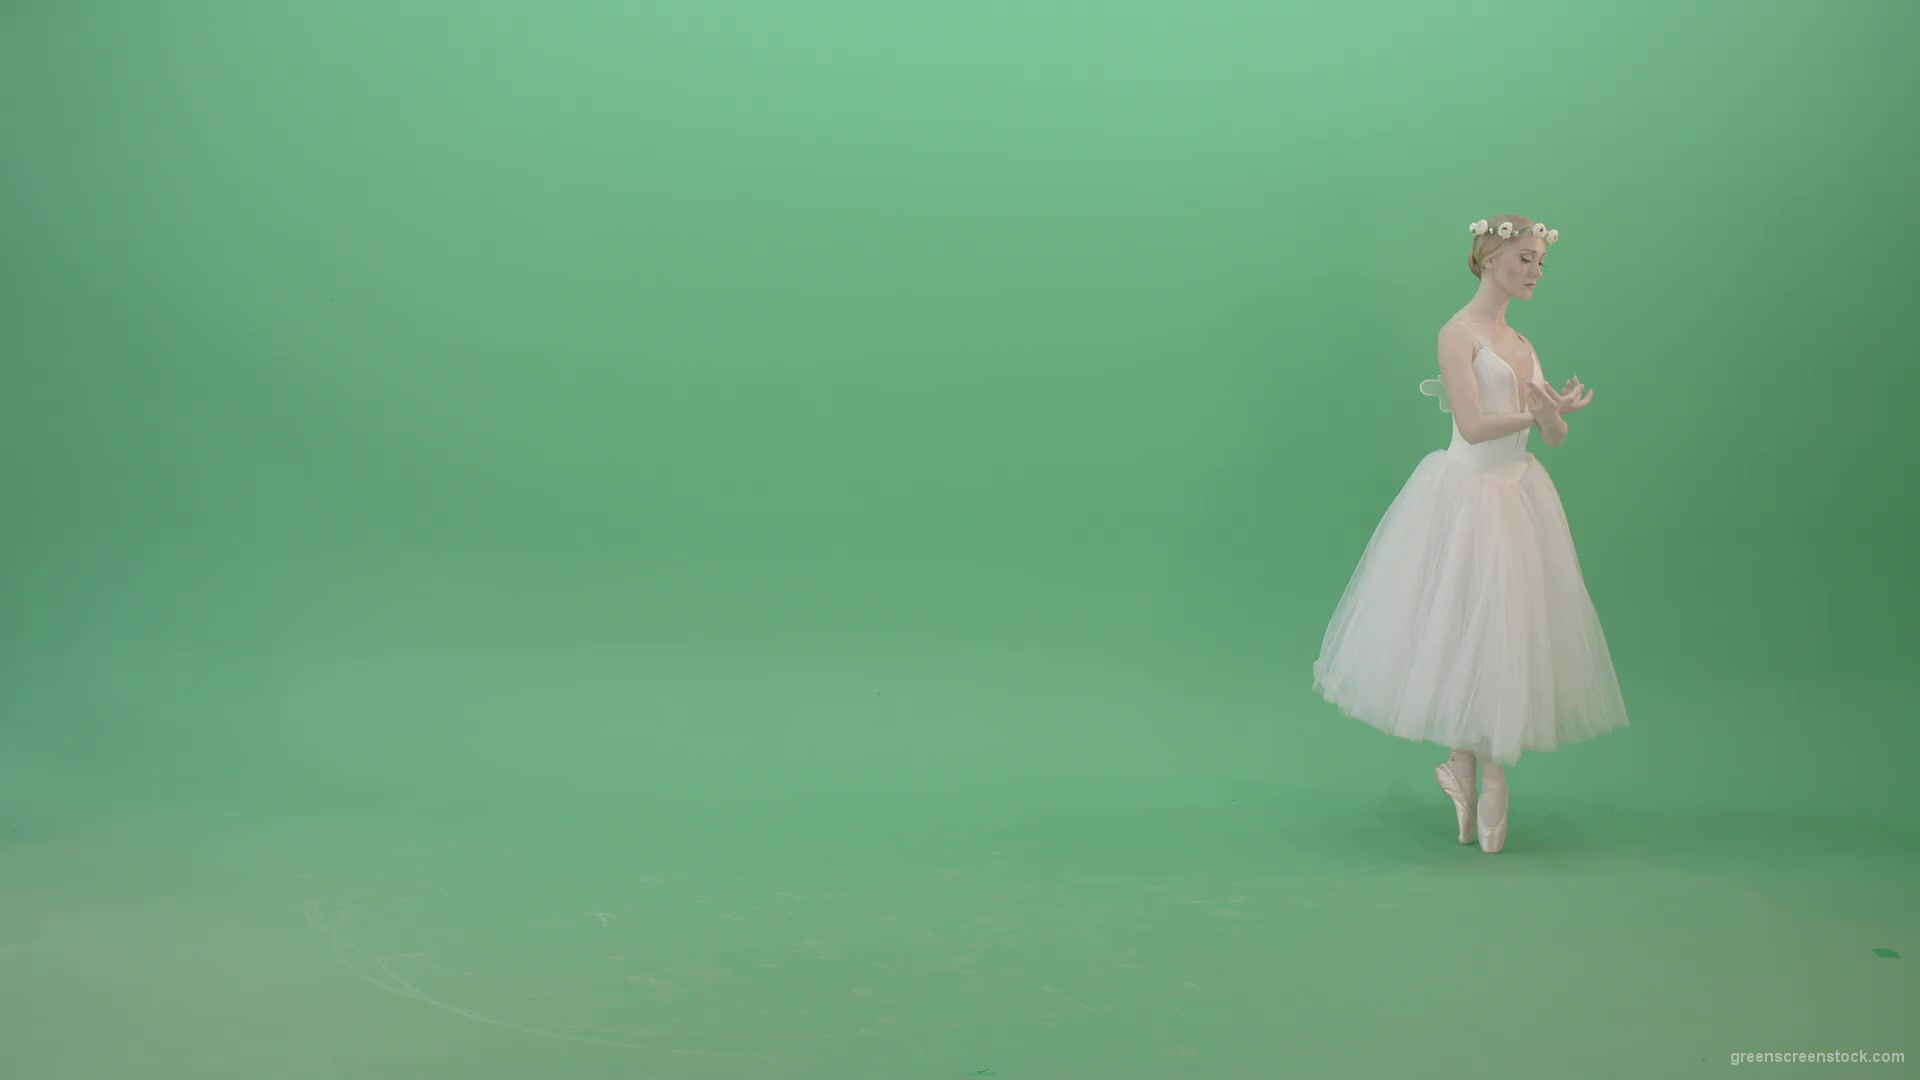 Elegant-Ballerina-Ballet-Girl-posing-for-Advertising-packshot-4K-Video-Footage-1920_001 Green Screen Stock